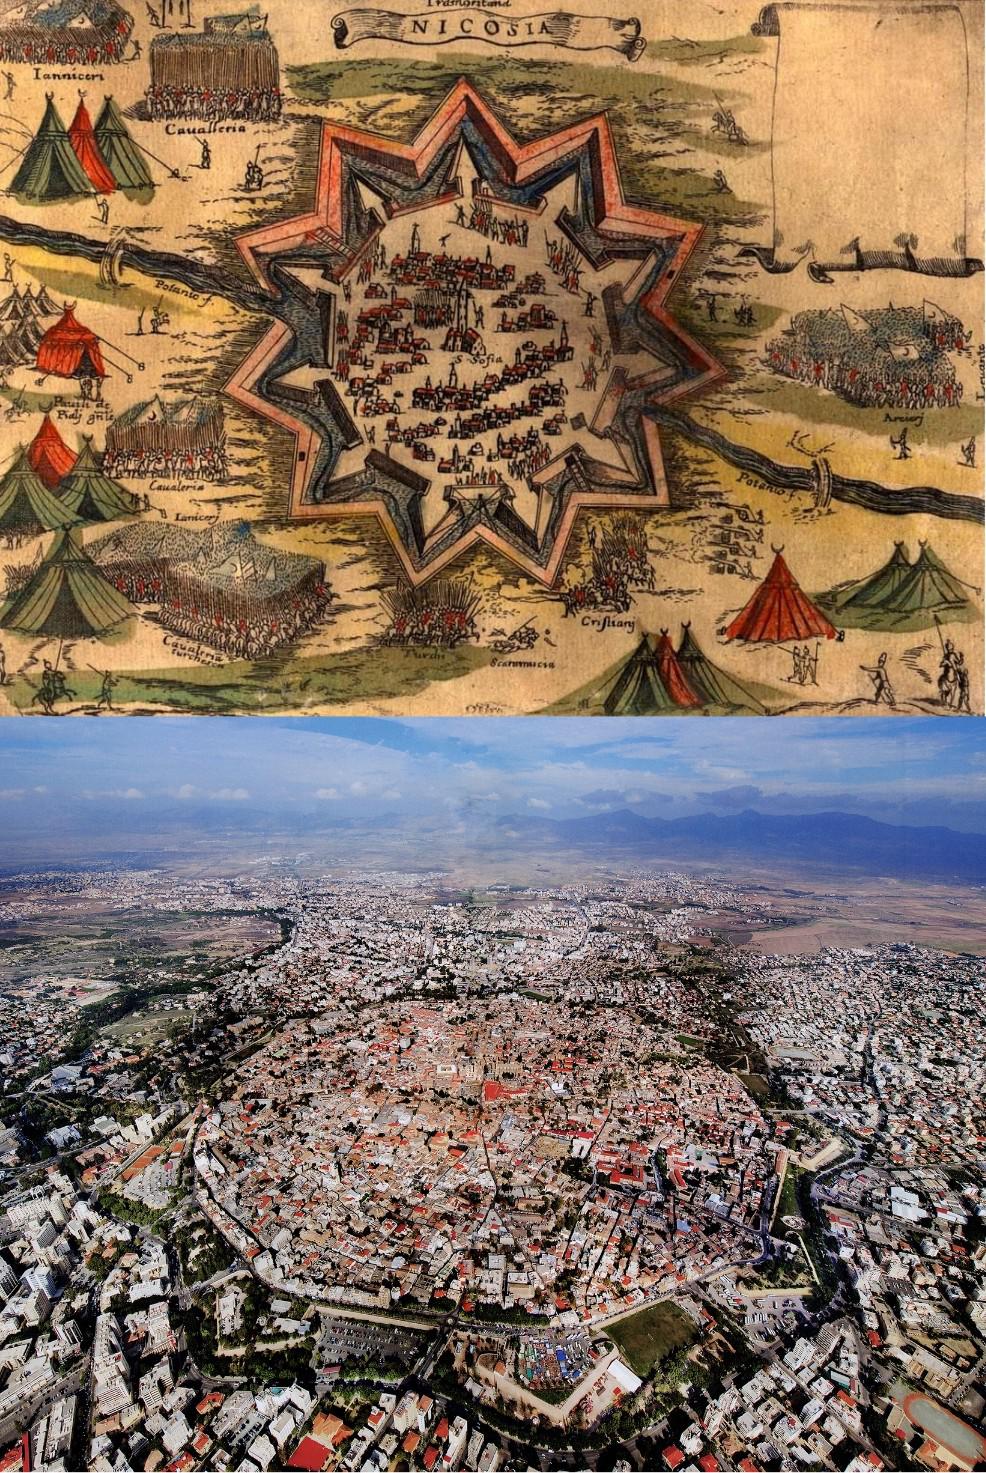 ニコシア キプロス および同じ城壁都市を上空から見た 16 世紀の地図 Walk News